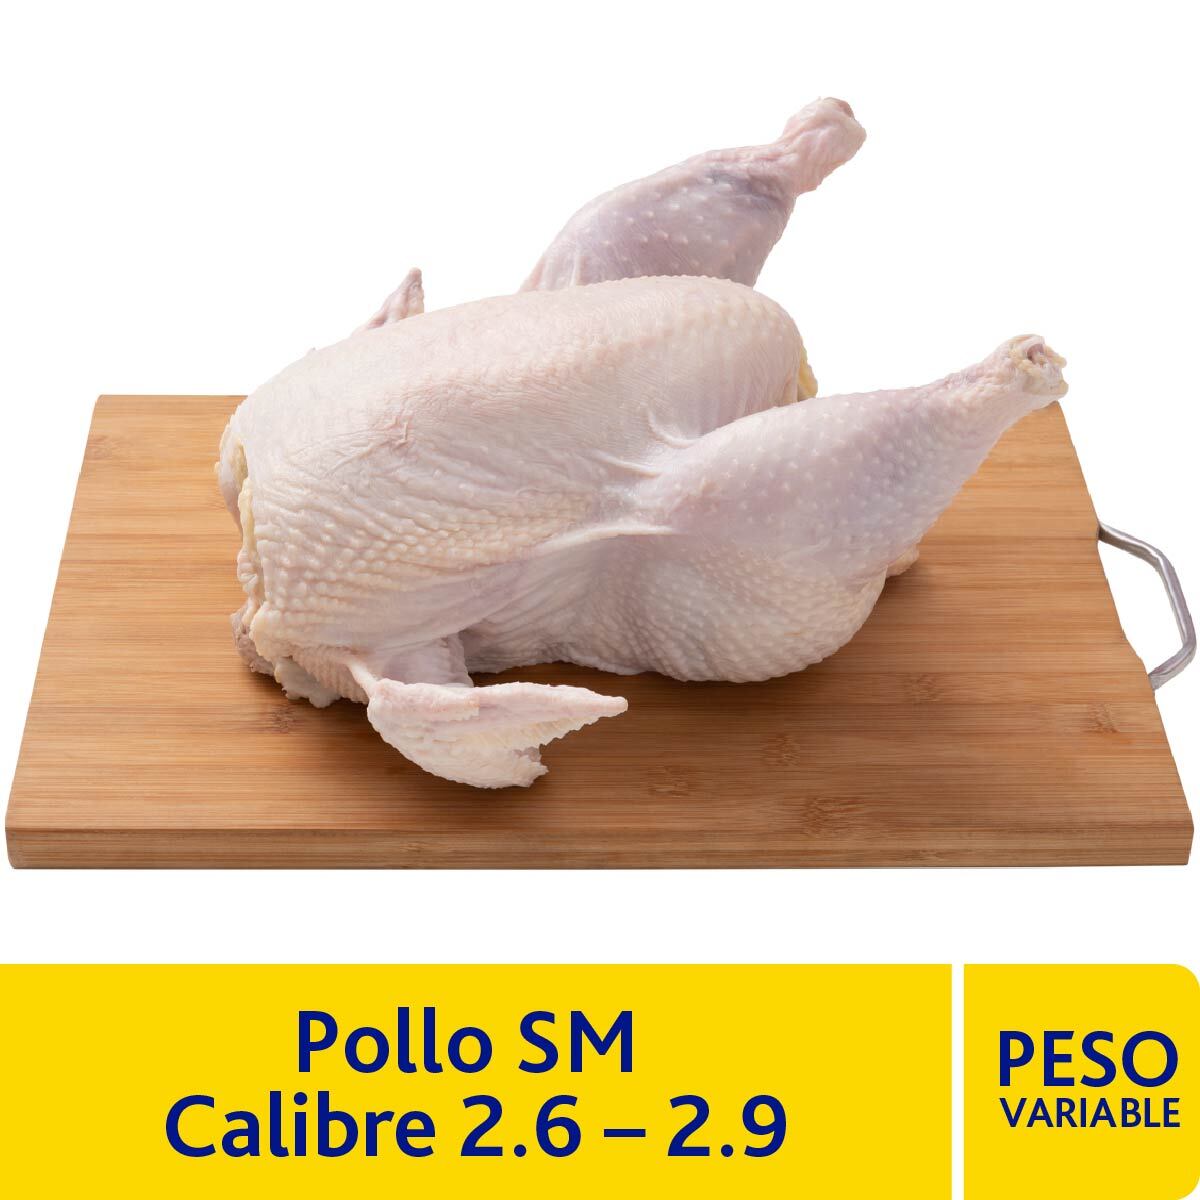 Pollo SM Calibre 2.6-2.9 kg.